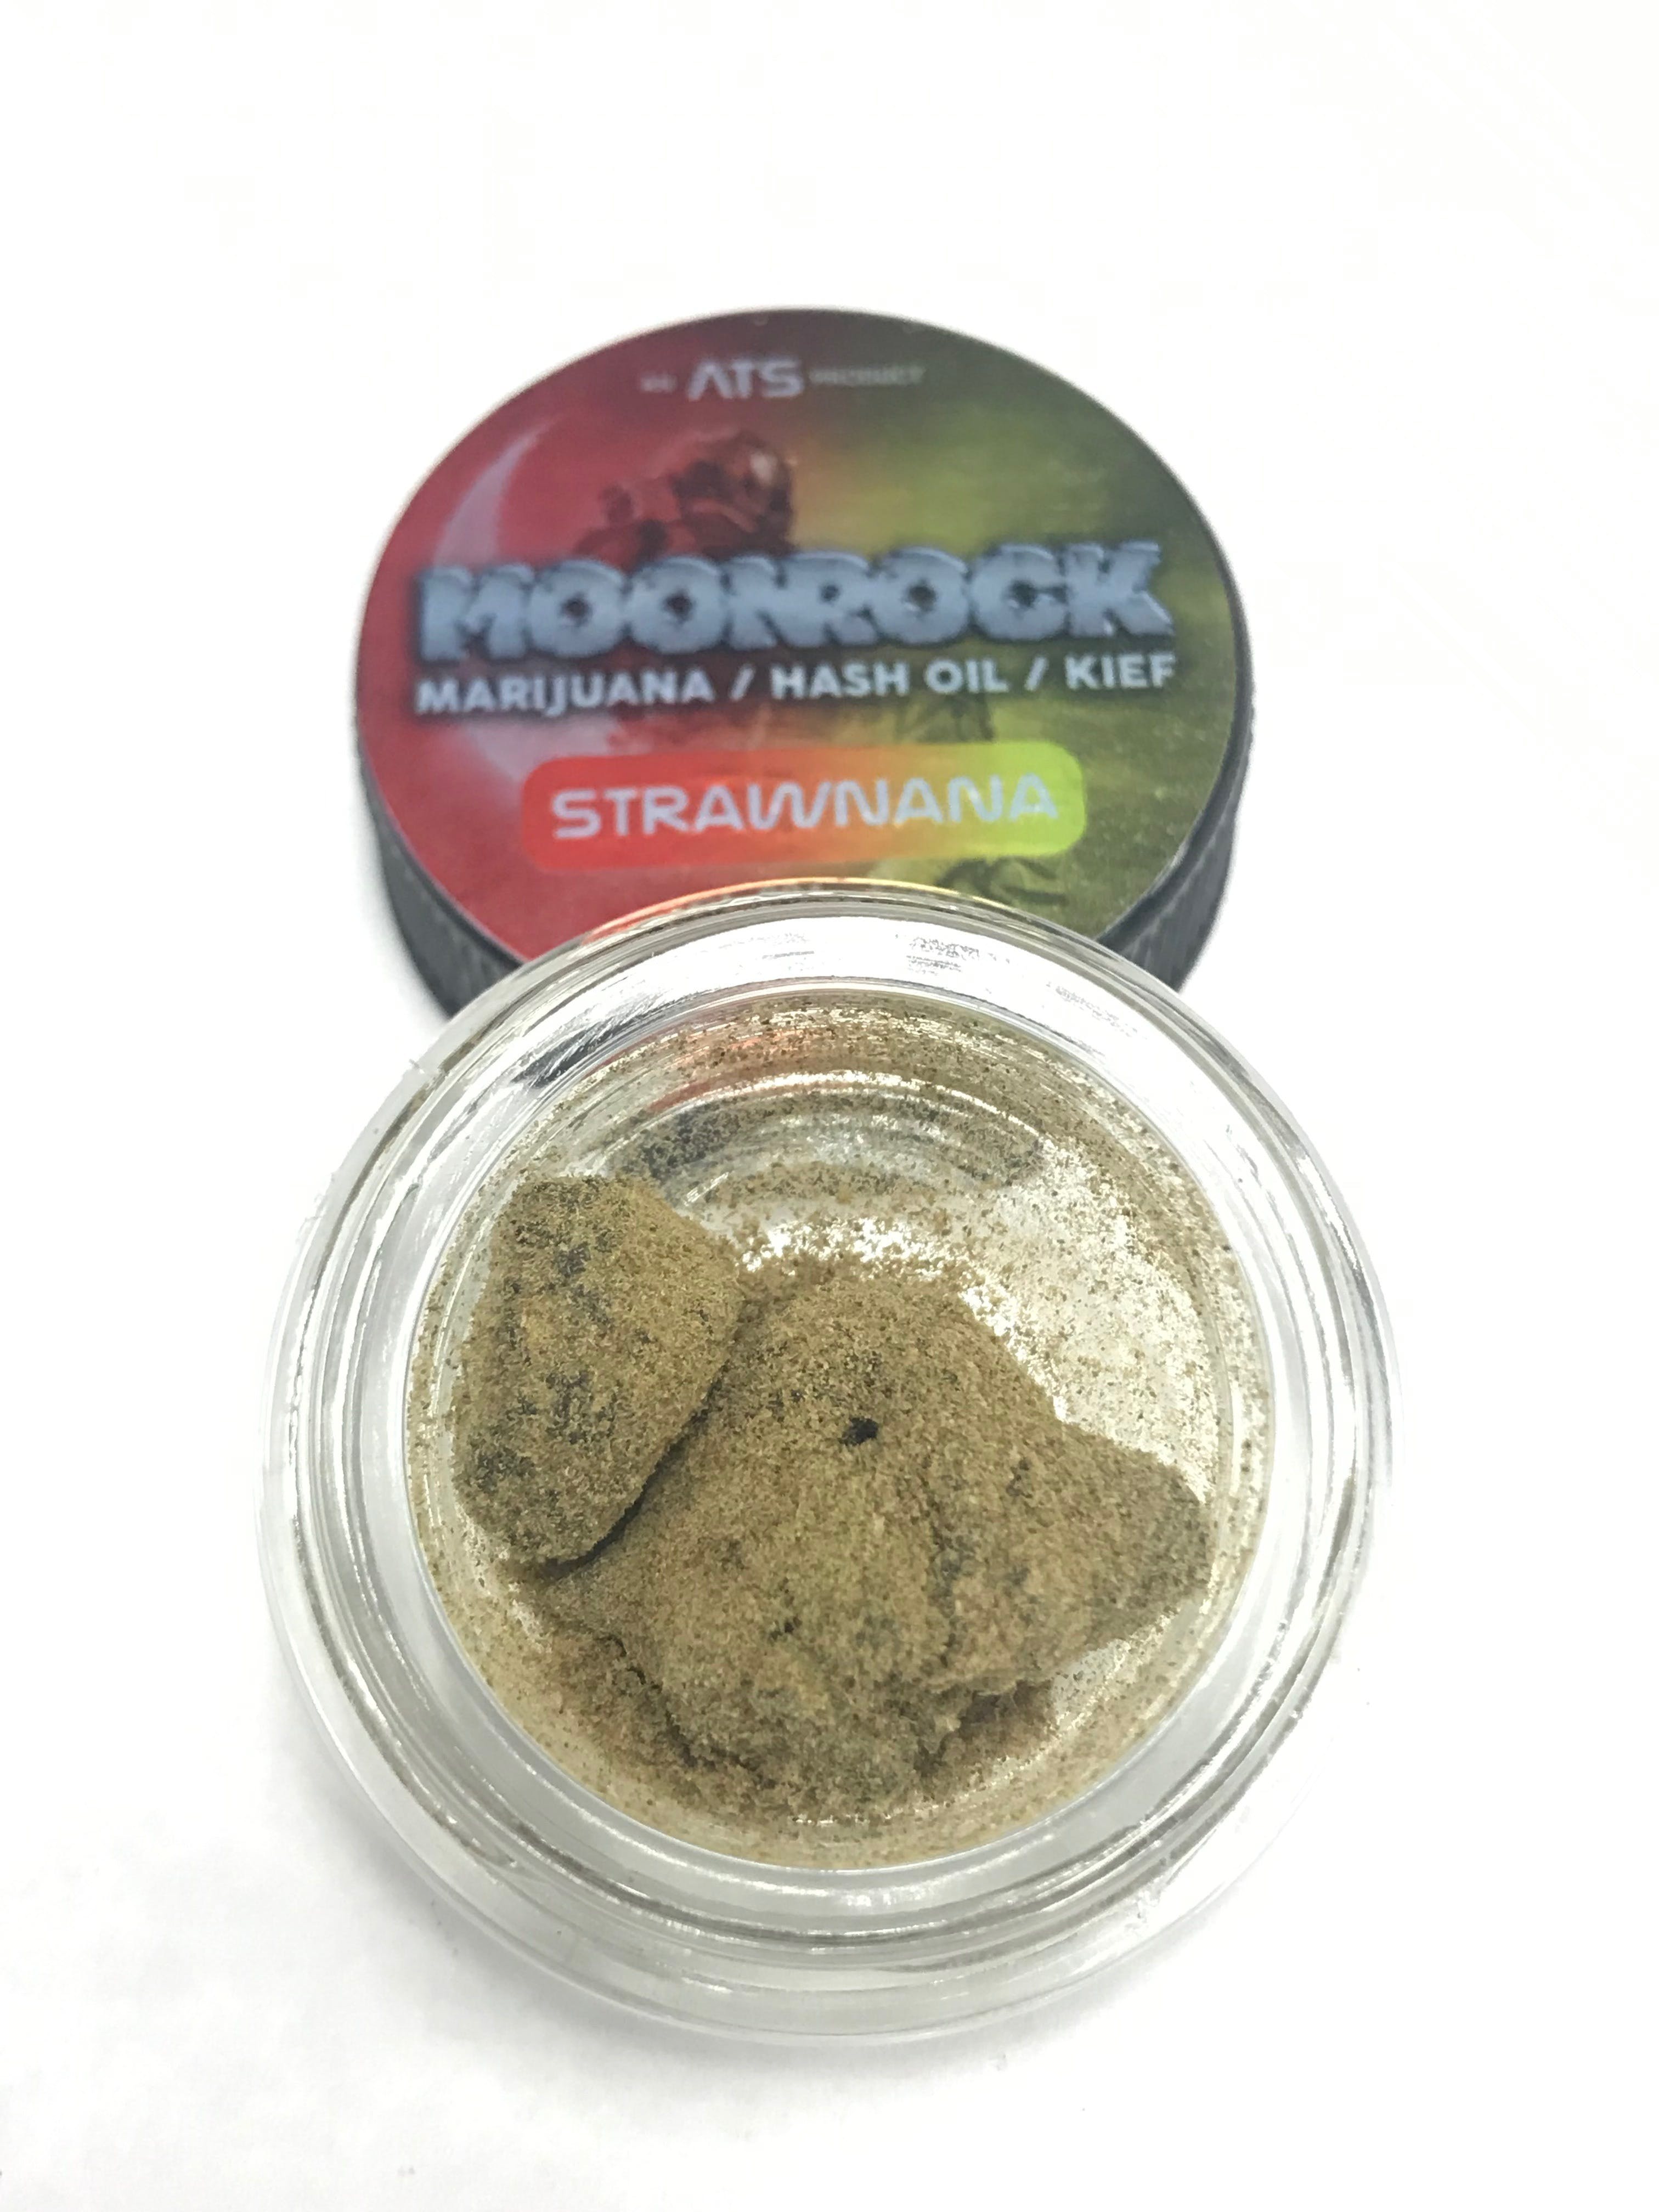 marijuana-dispensaries-call-for-verification-fresno-ats-moonrocks-strawnana